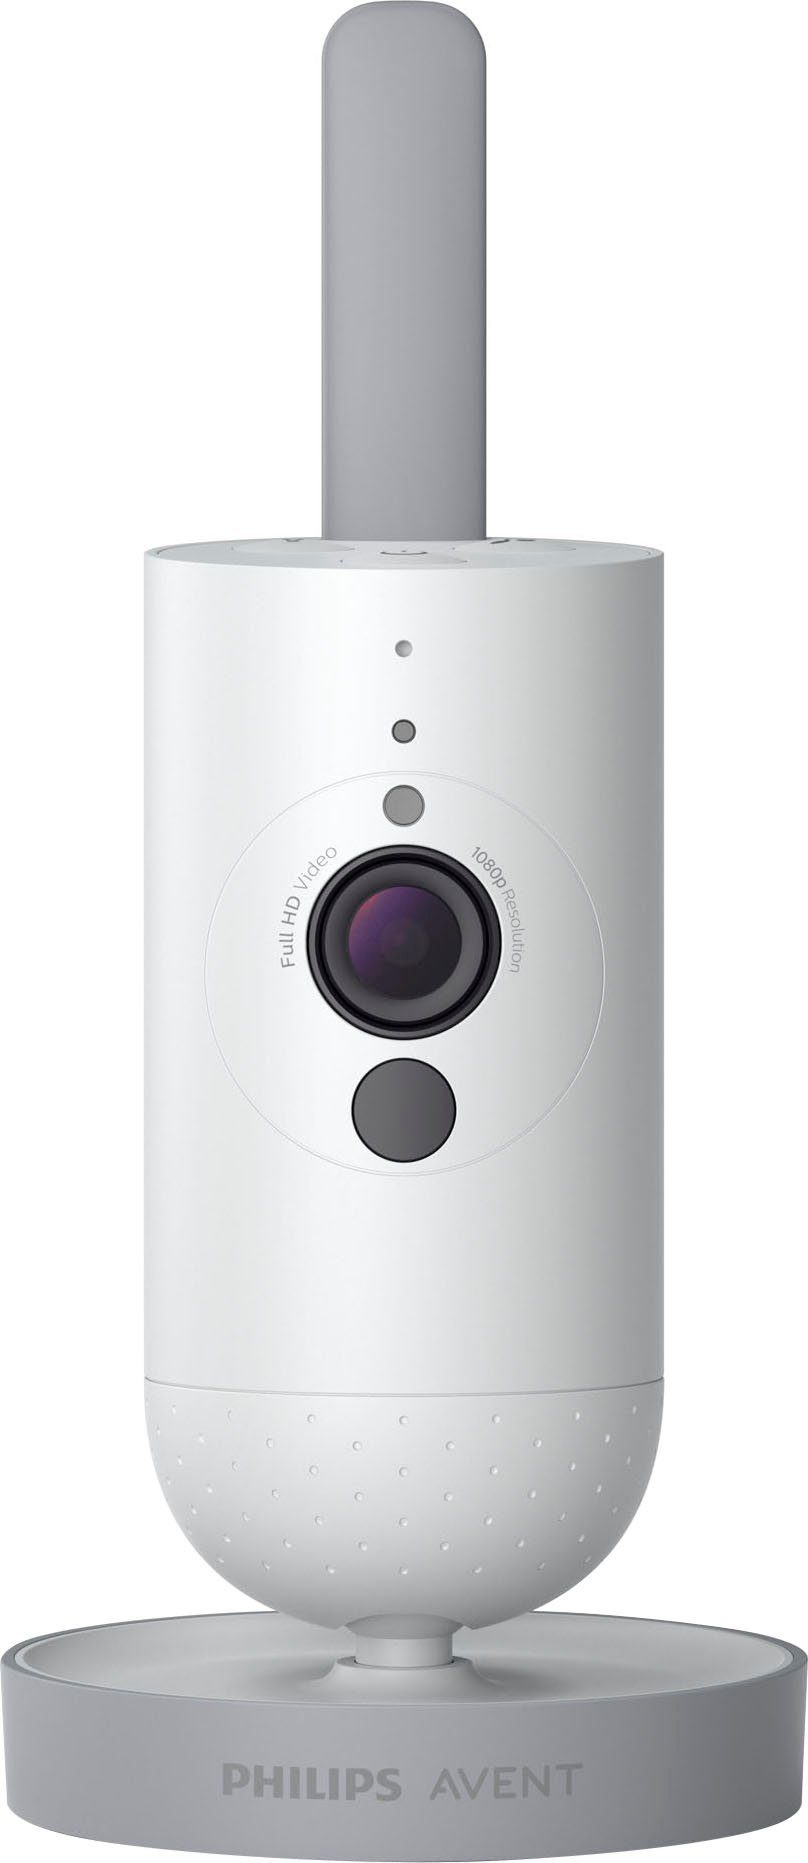 Philips AVENT Babyphone Connected SCD923/26 Video, mit Full-HD-Kamera,  Reichweite von 400 Metern und Gegensprechfunktion